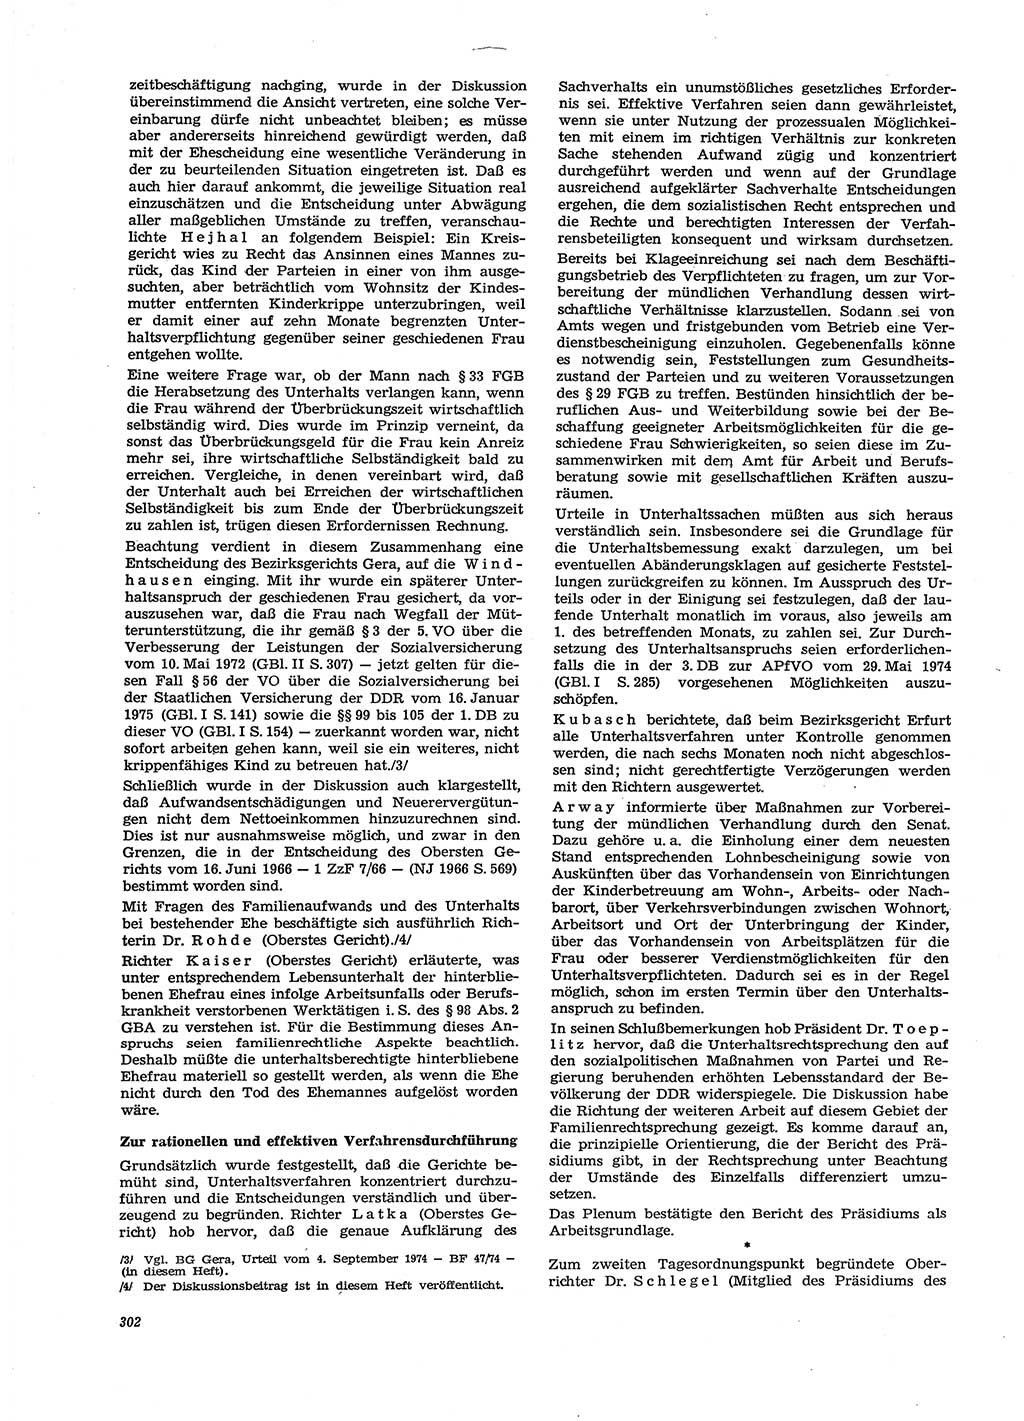 Neue Justiz (NJ), Zeitschrift für Recht und Rechtswissenschaft [Deutsche Demokratische Republik (DDR)], 29. Jahrgang 1975, Seite 302 (NJ DDR 1975, S. 302)